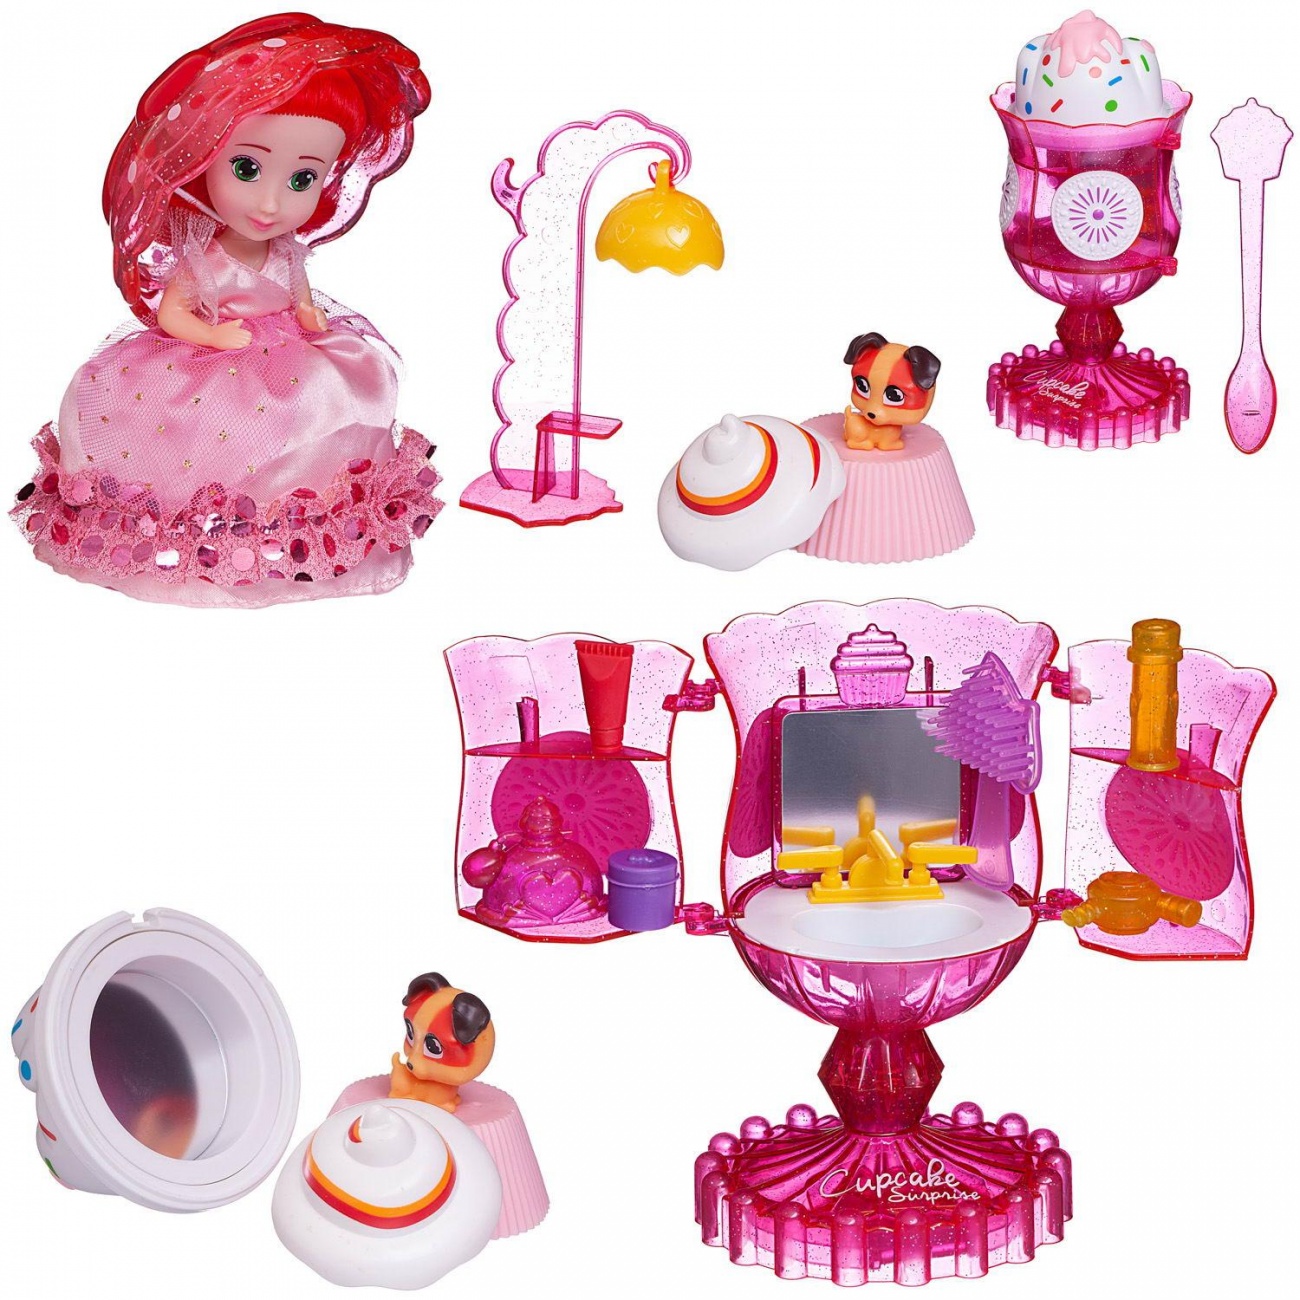 фото Игровой набор emco cupcake surprise мороженое - туалетный столик с куклой розовый emway singapore pte.ltd